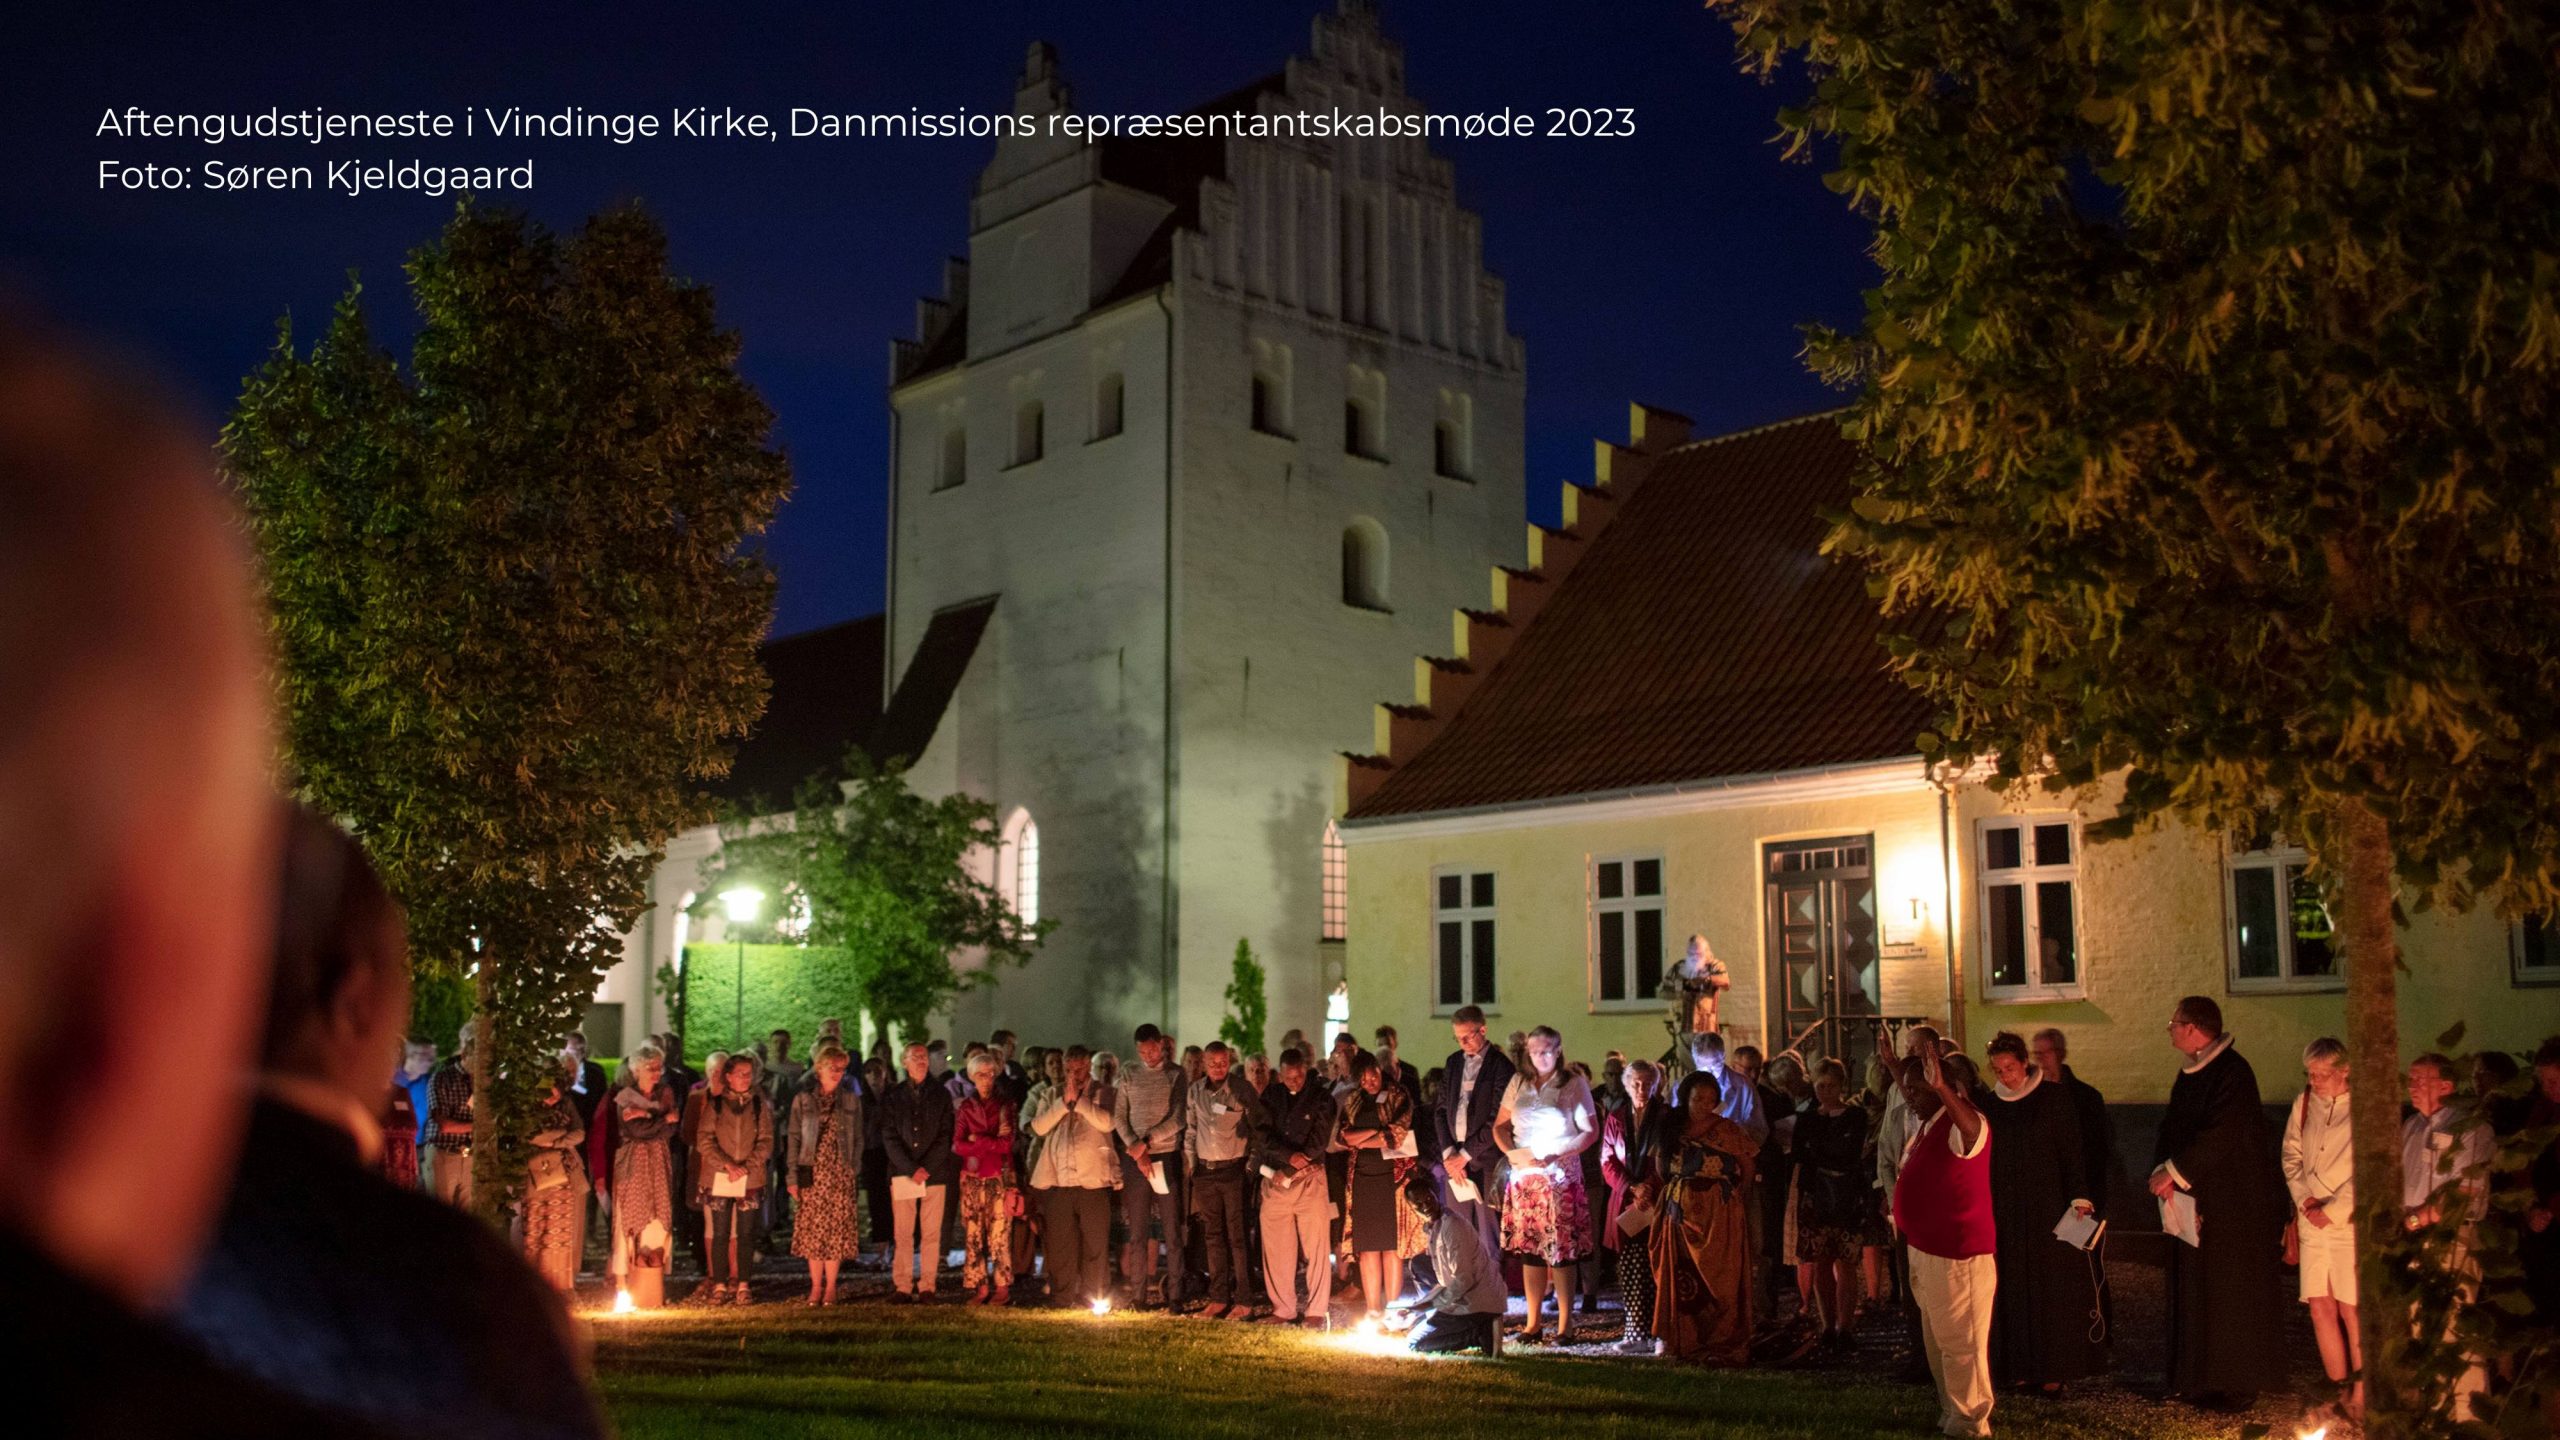 Deltagere i en aftengudstjeneste i Vindinge Kirke på Fyn står udenfor kirken i en cirkel. Der er mørkt og der er tændt havelys.